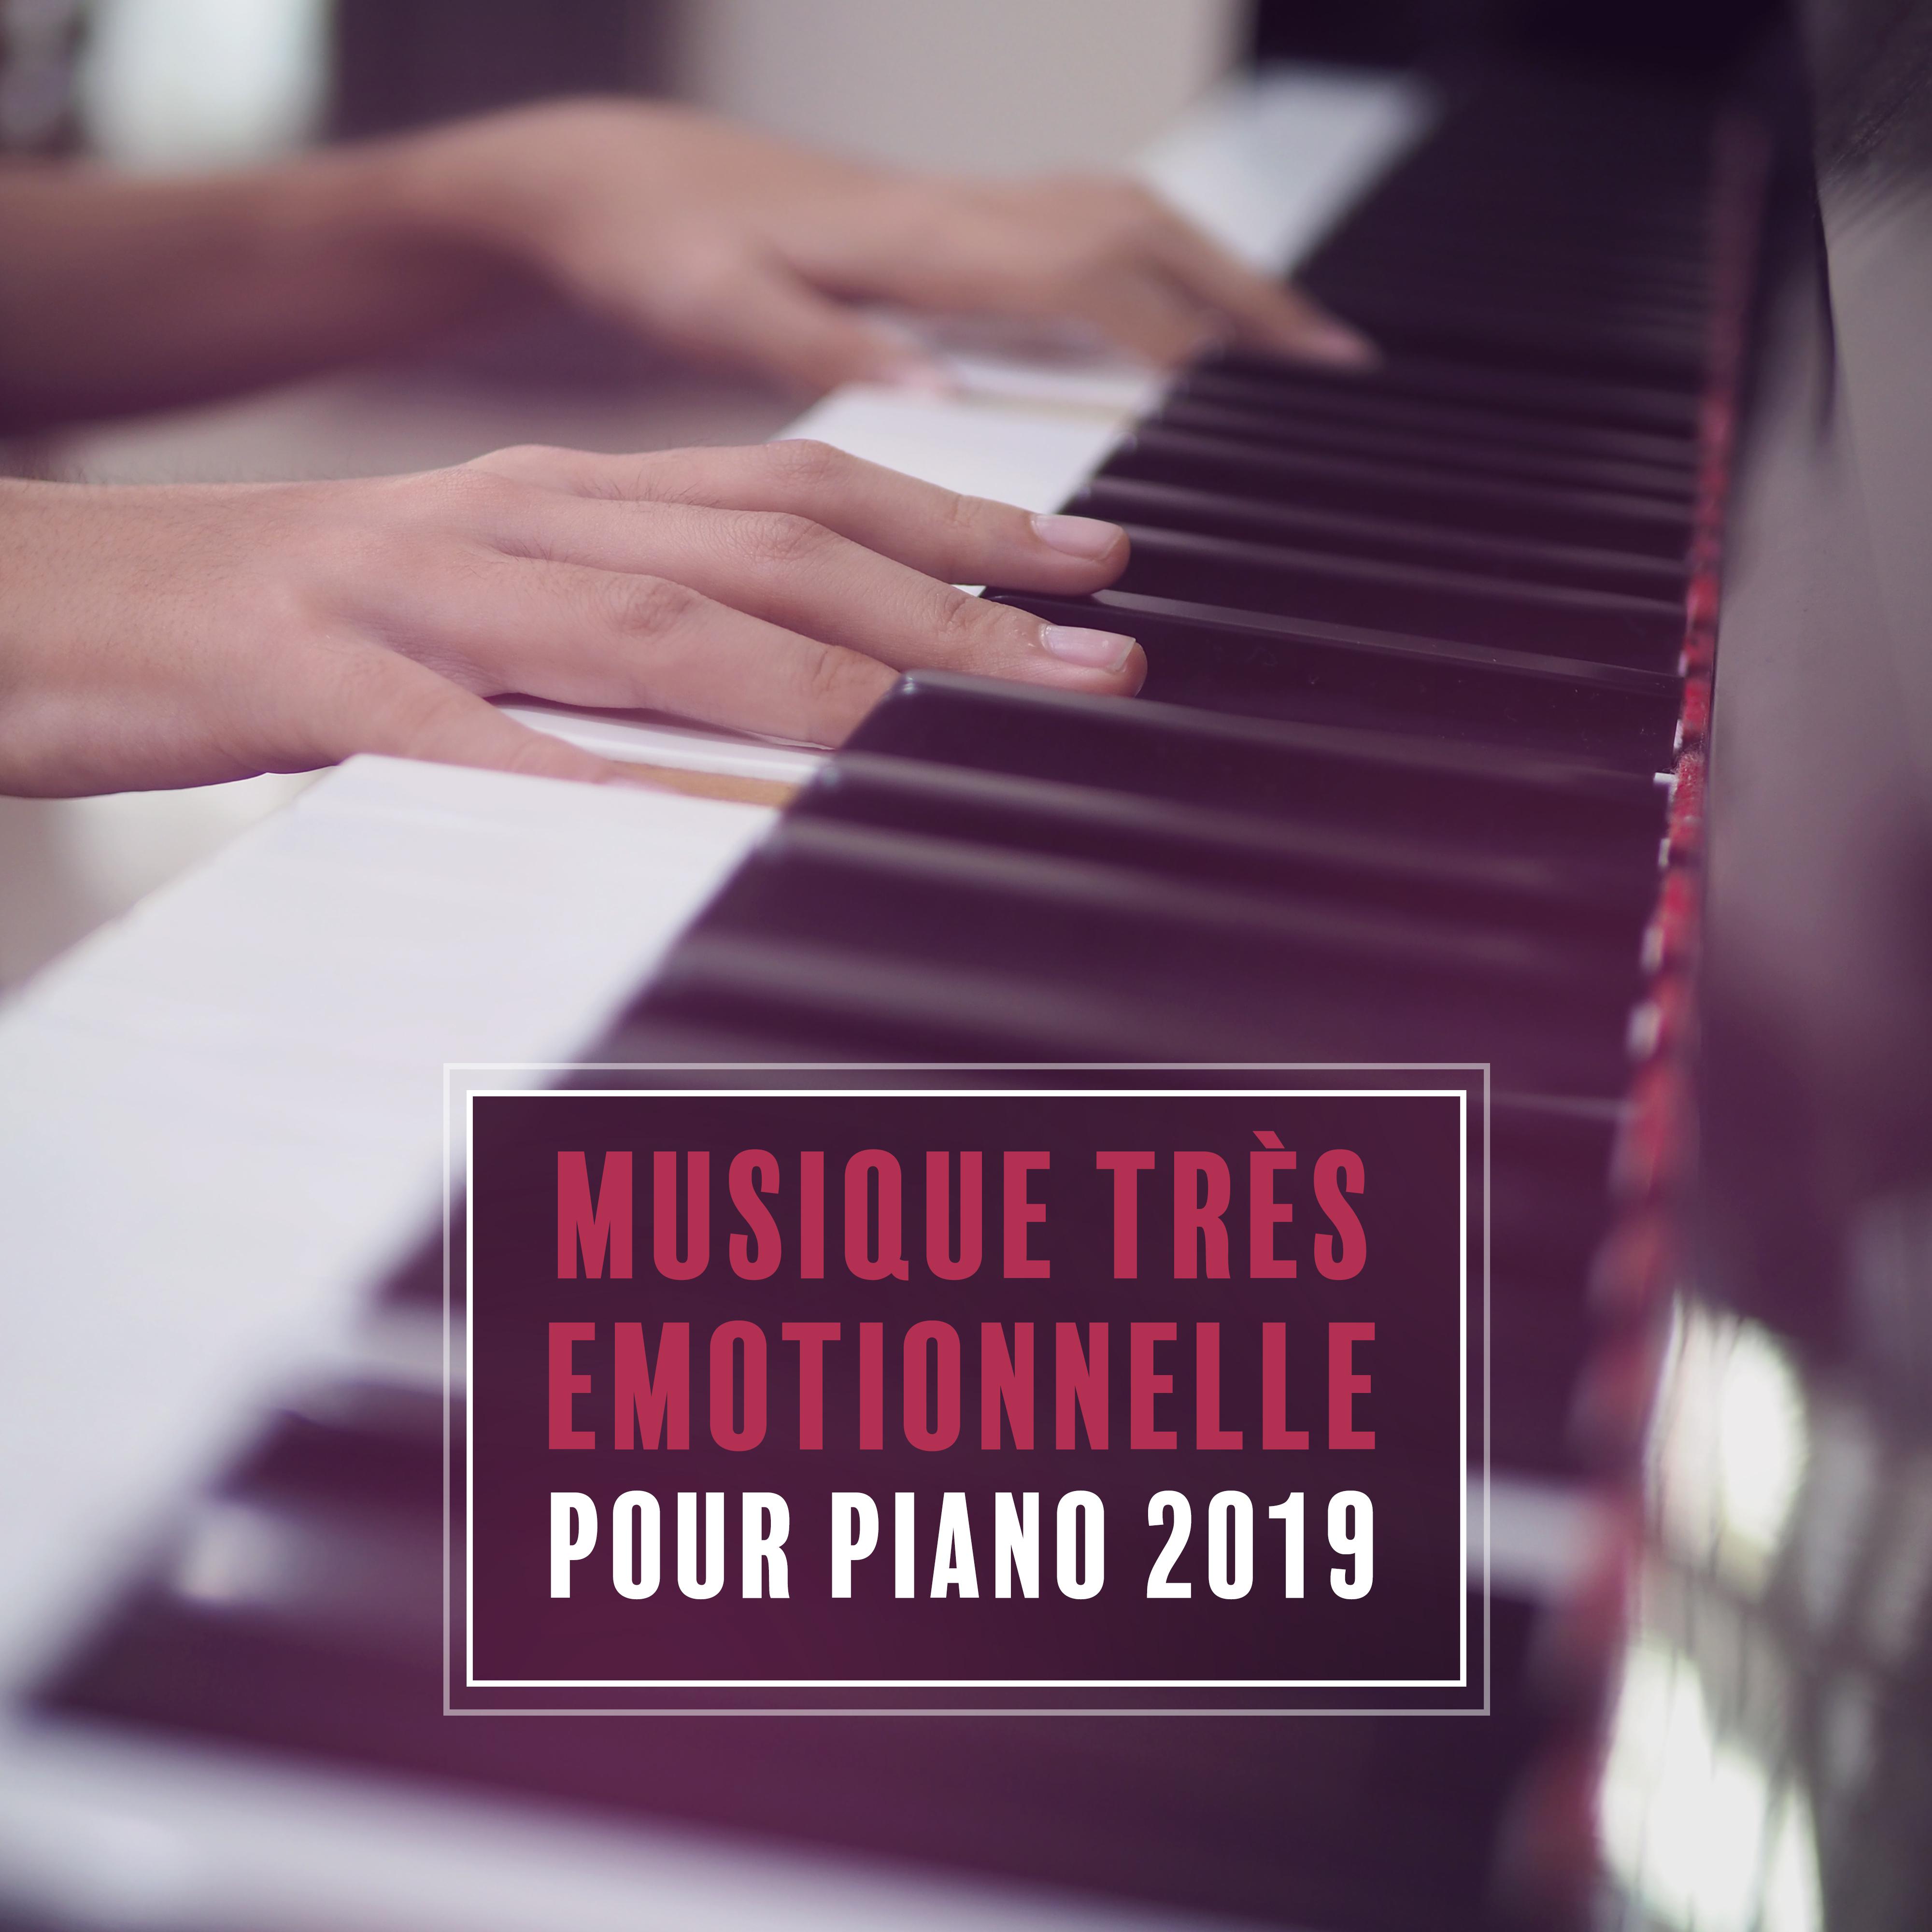 Musique Très Emotionnelle pour Piano 2019